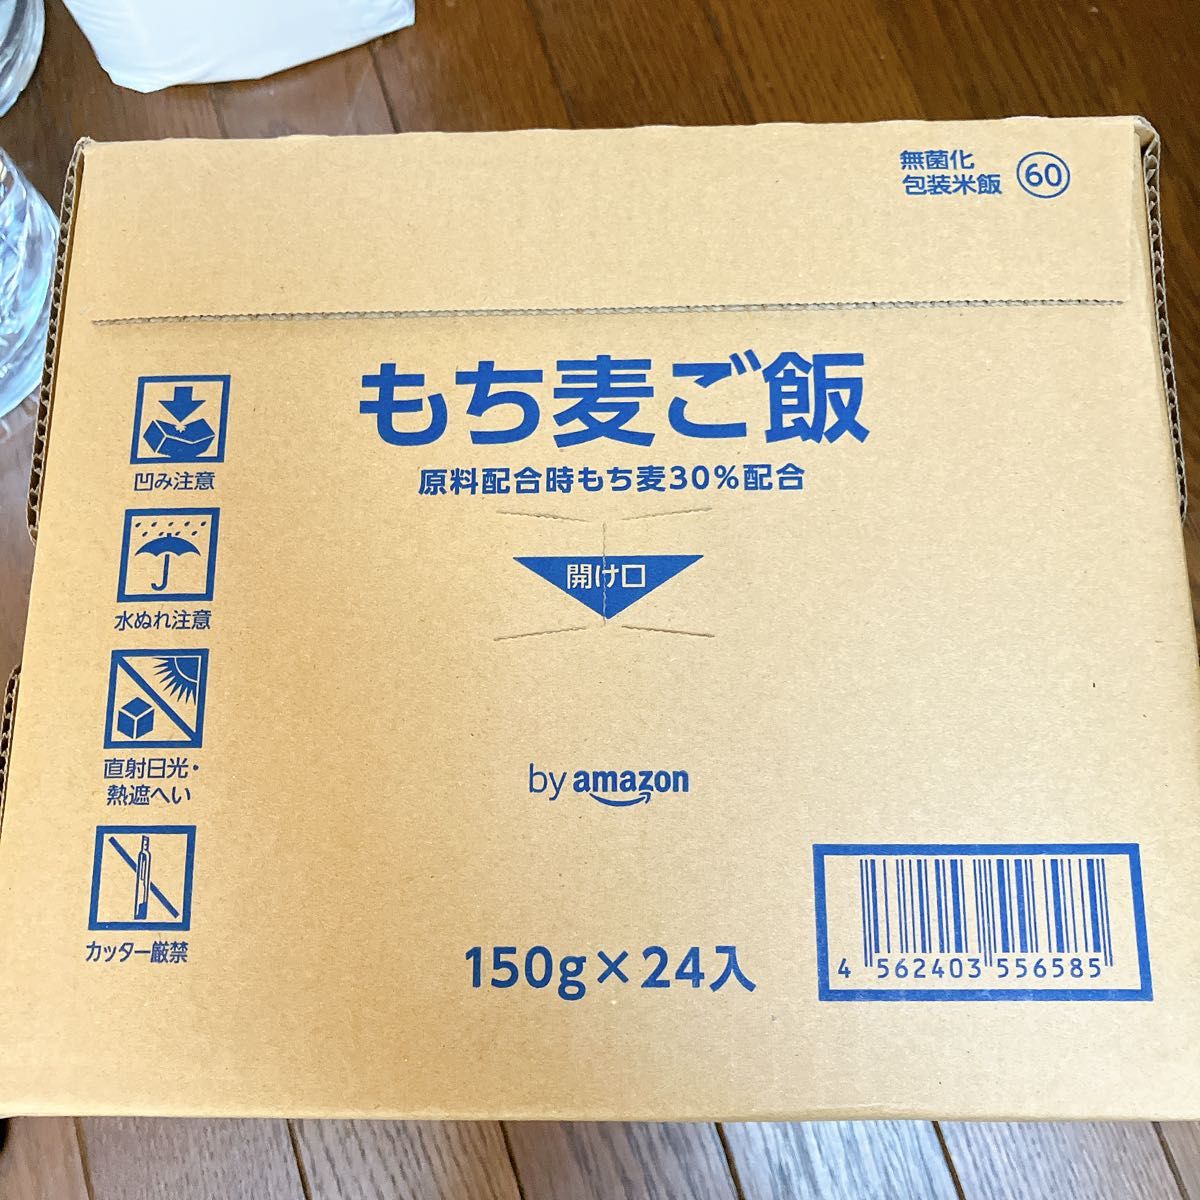 【31個セット】by Amazon もち麦パックごはん 150g 低温製法米